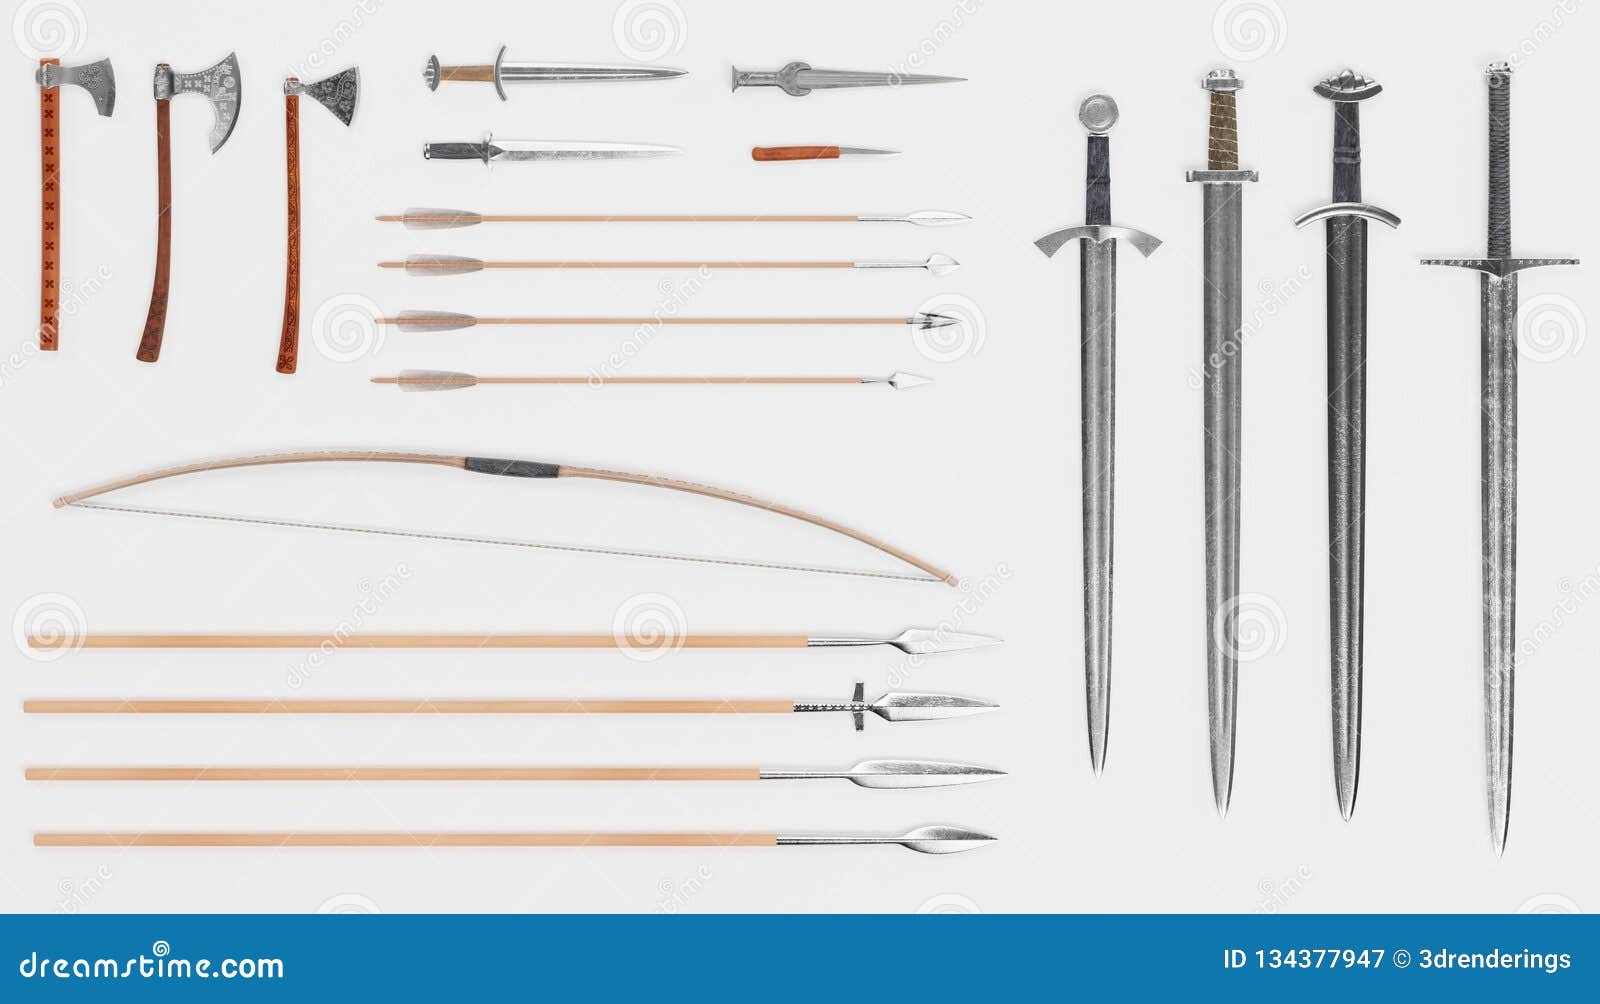 3d render of viking weapons